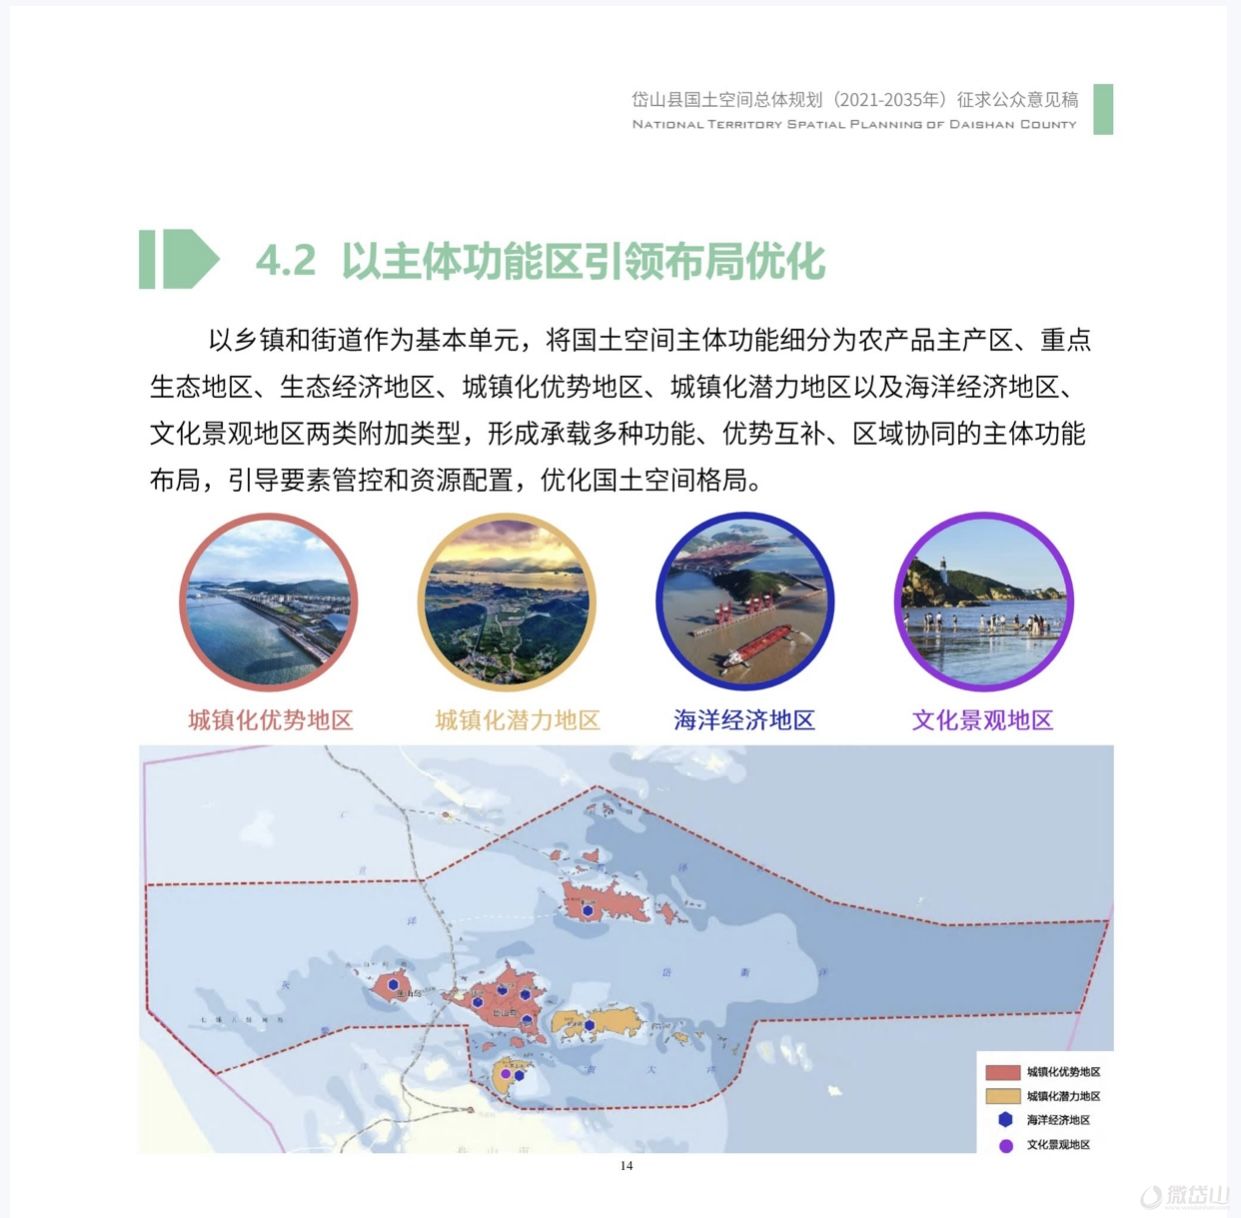 《岱山县国土空间总体规划(2021-2035年)》批前公示出台！(图14)